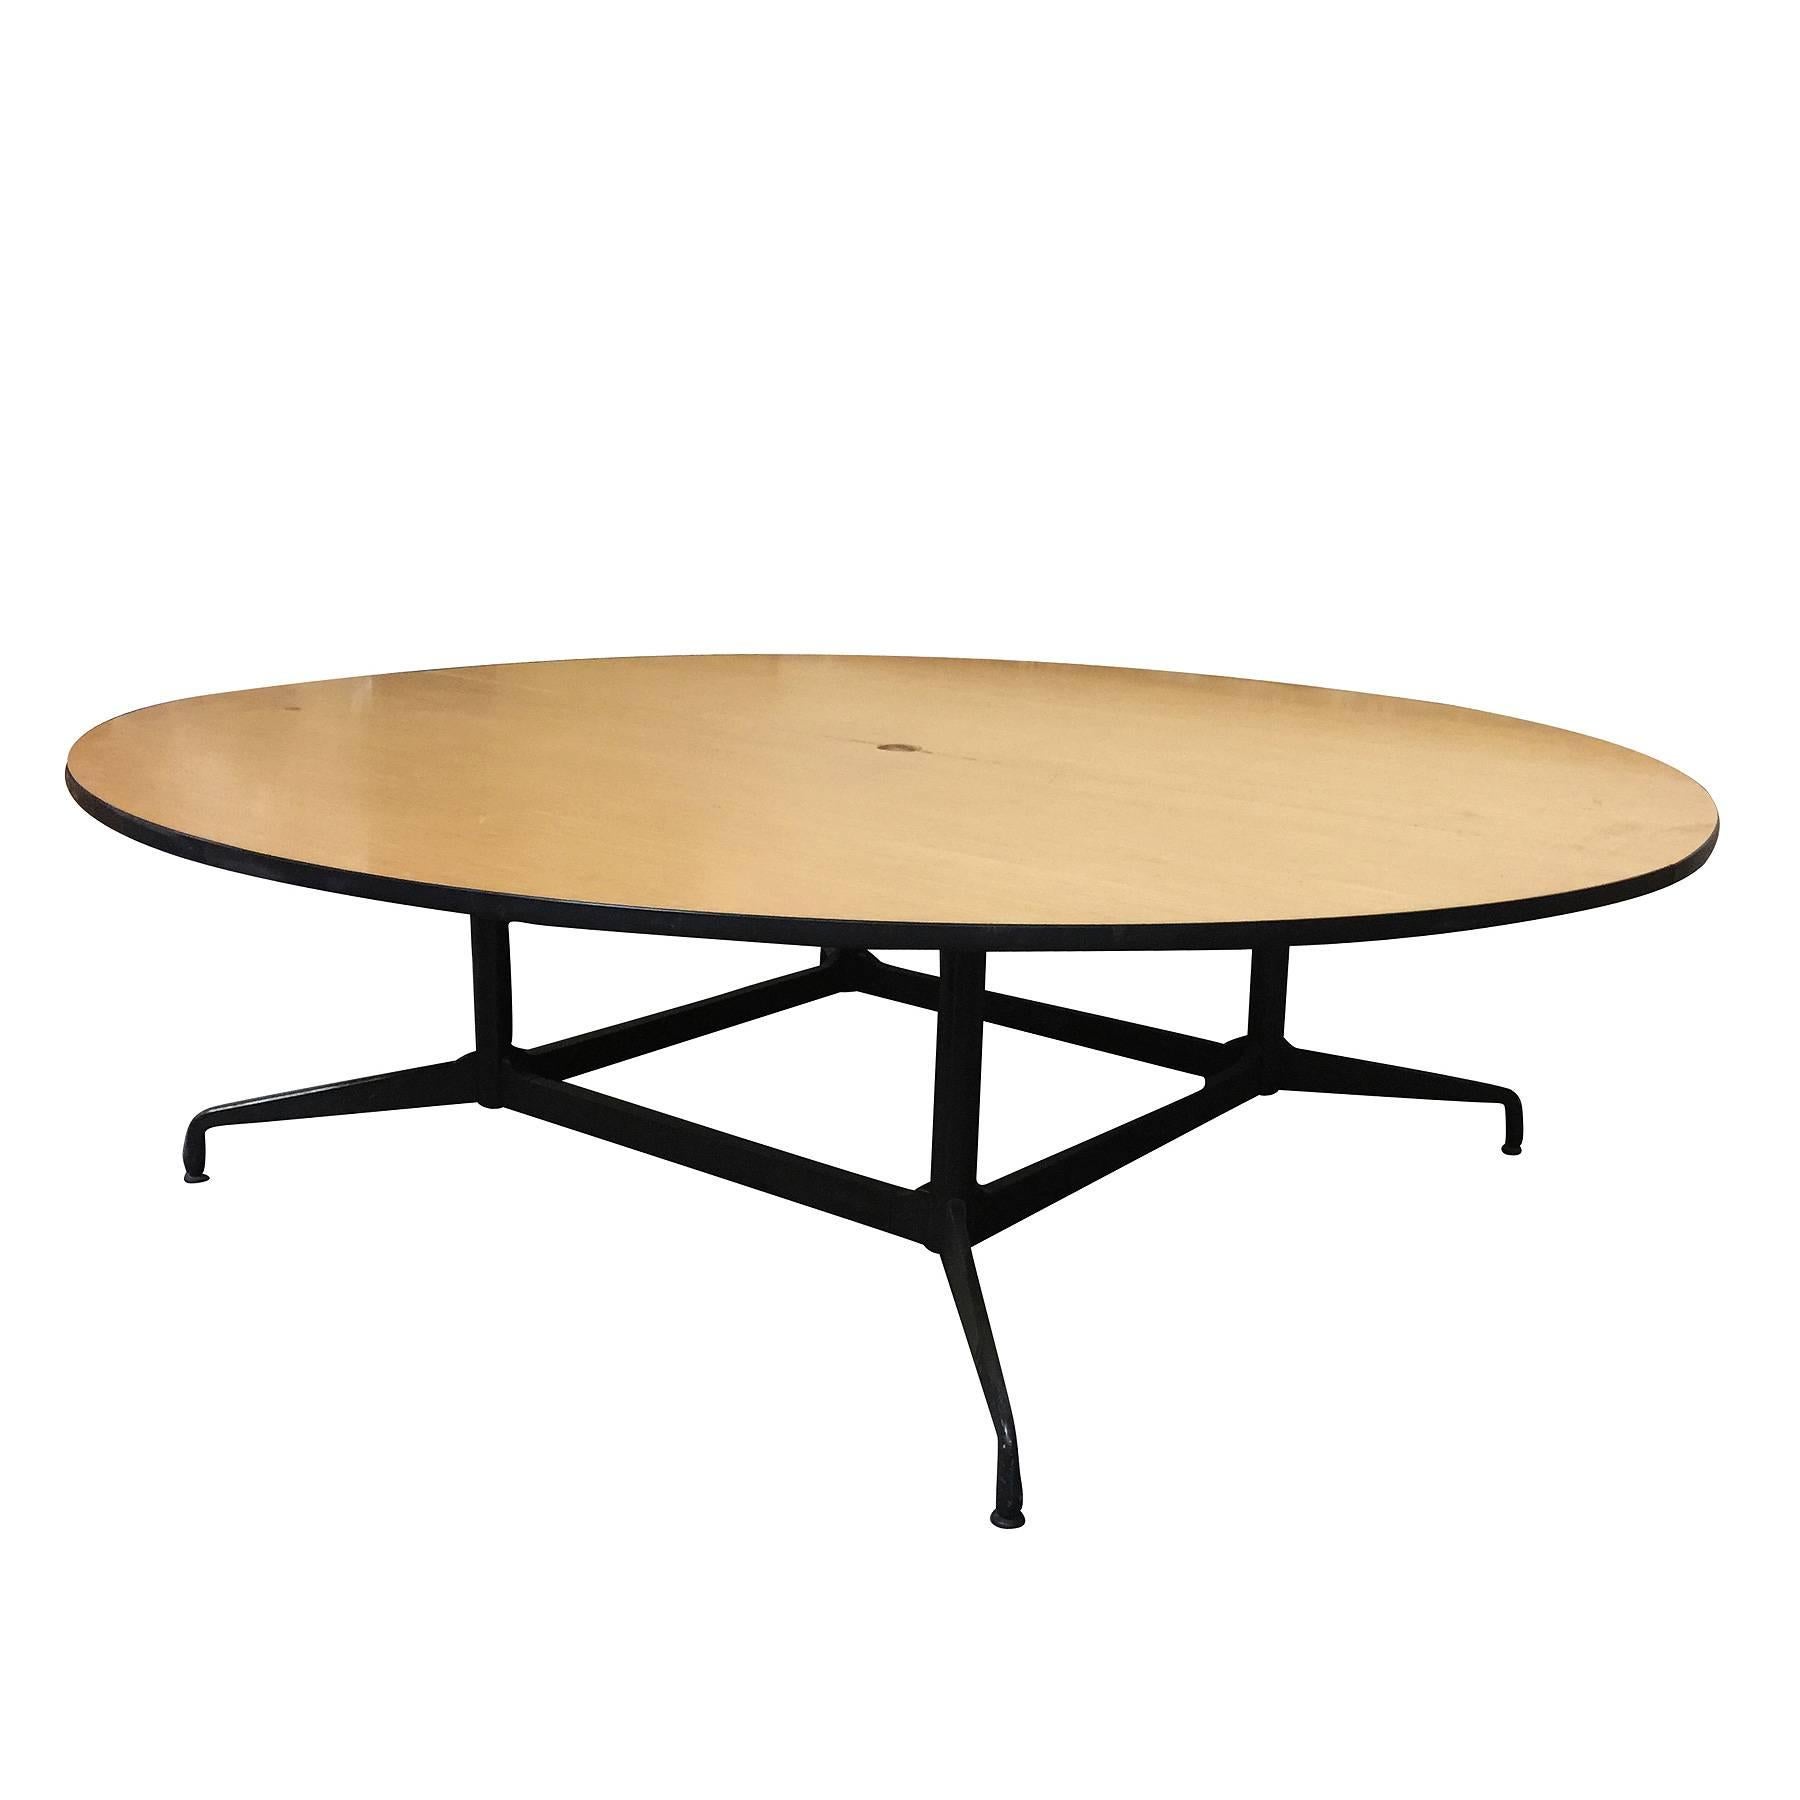 
Grande table de conférence ronde de 8 pieds conçue par Charles et Ray Eames, par Herman Miller. 

La table comporte un grand plateau rond en deux parties en bois stratifié plaqué chêne avec une base en acier et aluminium. Il s'agit d'une table